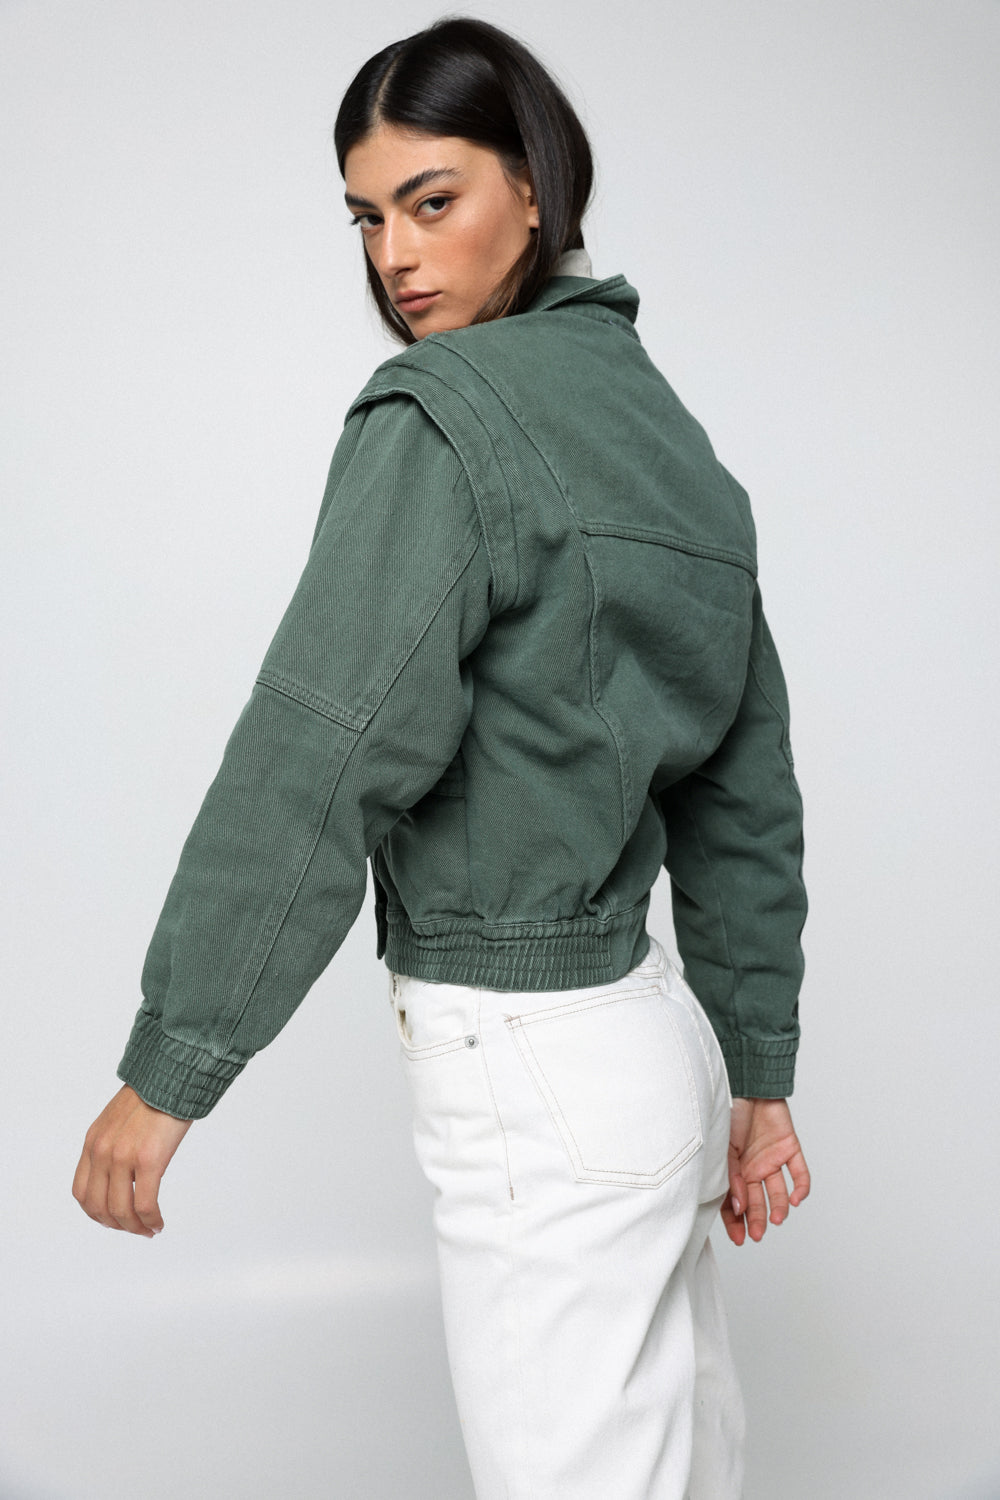 ז'קט ג'ינס ירוק לנשים דגם Denim Olive Green Jacket 